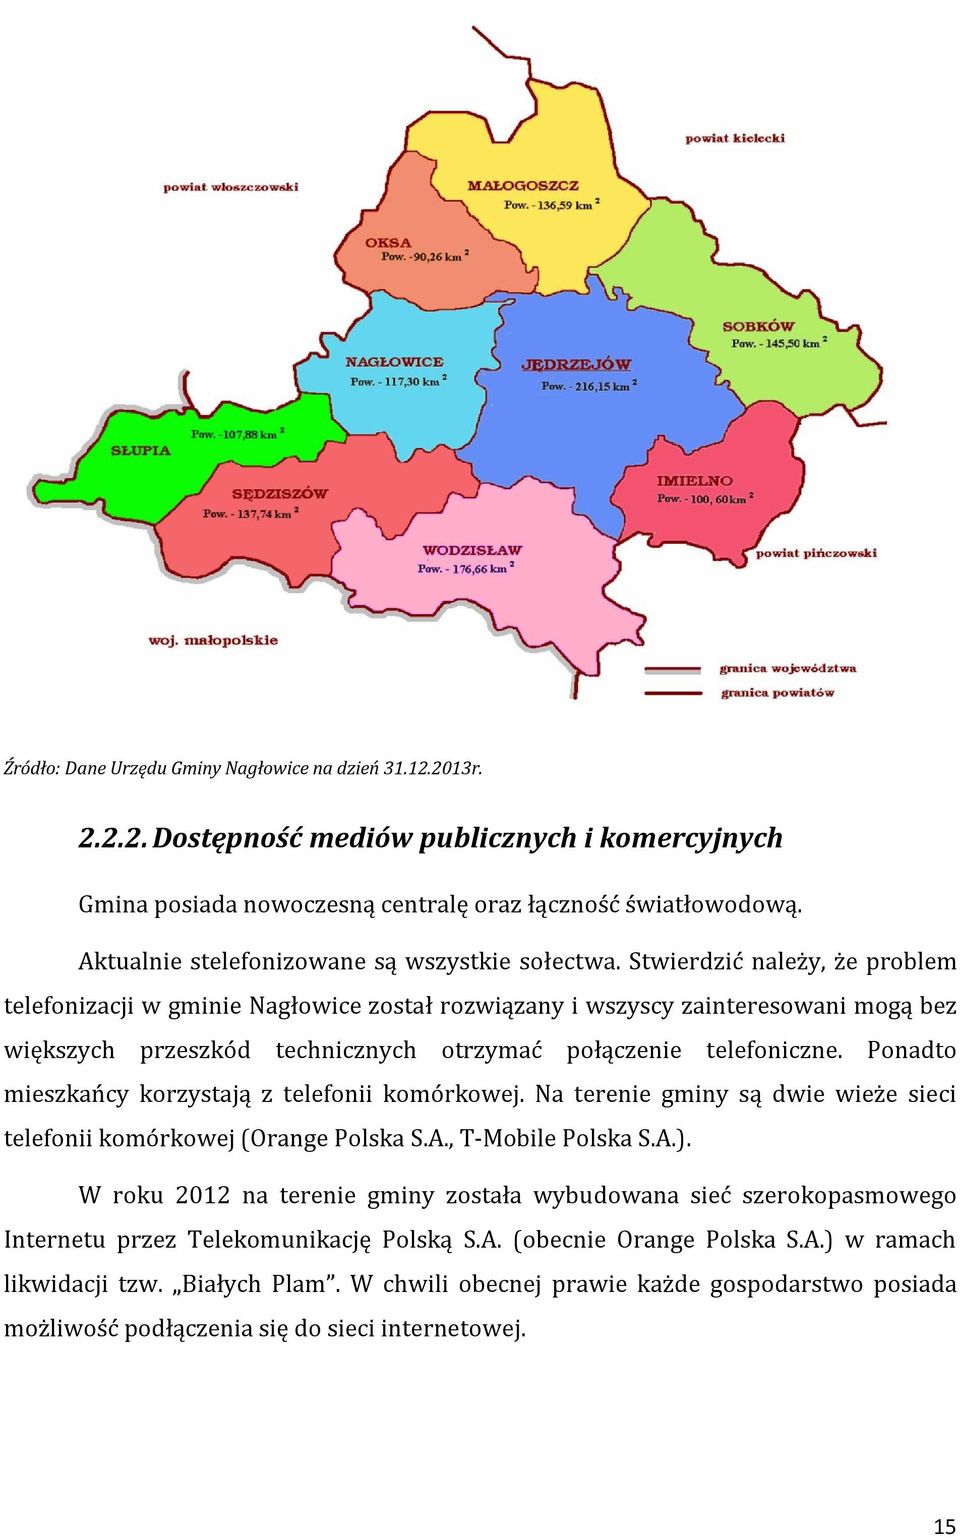 Stwierdzić należy, że problem telefonizacji w gminie Nagłowice został rozwiązany i wszyscy zainteresowani mogą bez większych przeszkód technicznych otrzymać połączenie telefoniczne.